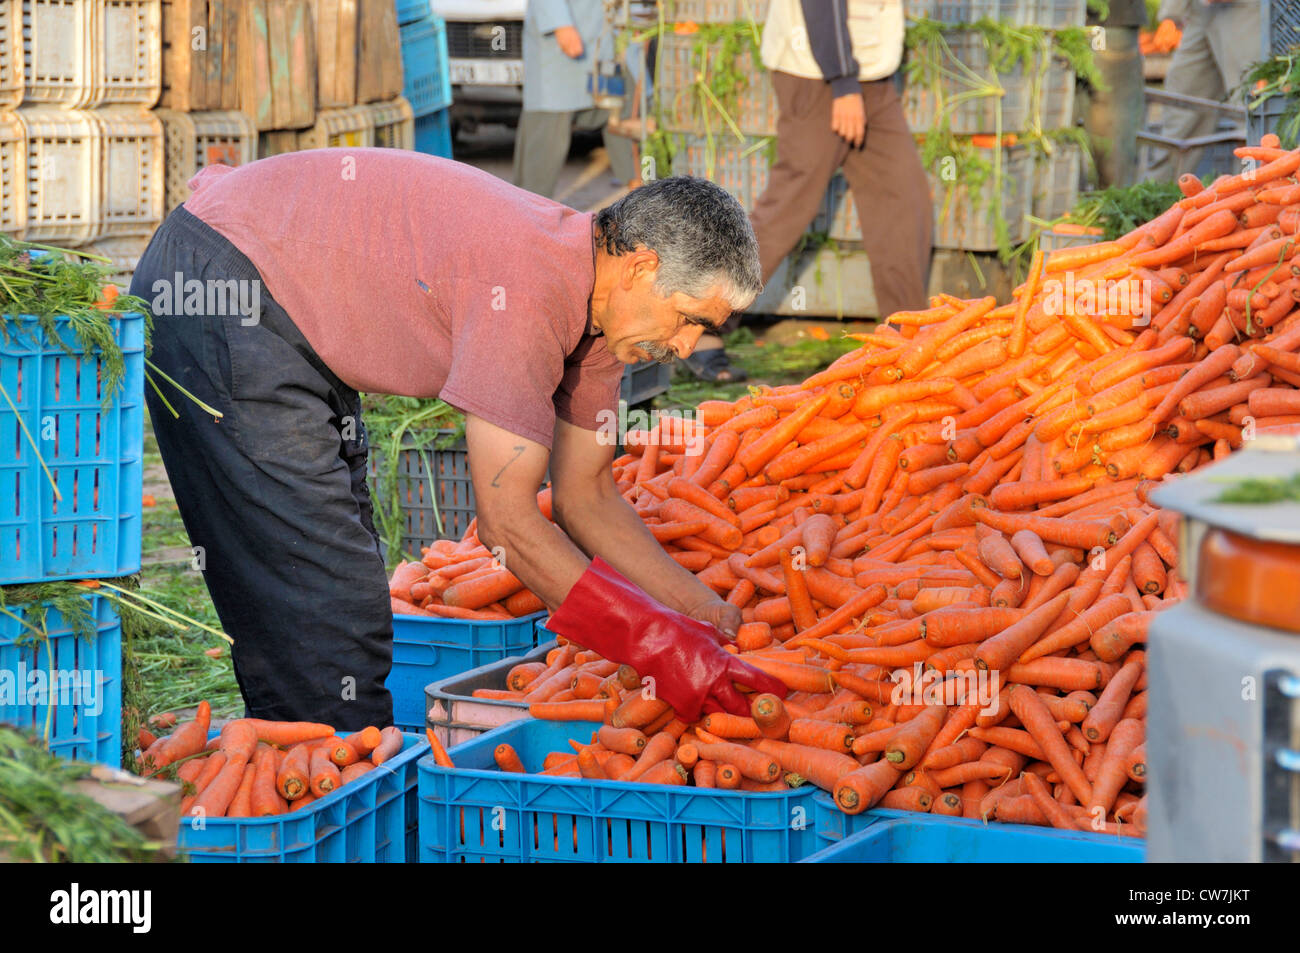 Tri des carottes sur l'homme, marché, Maroc Inezgane Banque D'Images